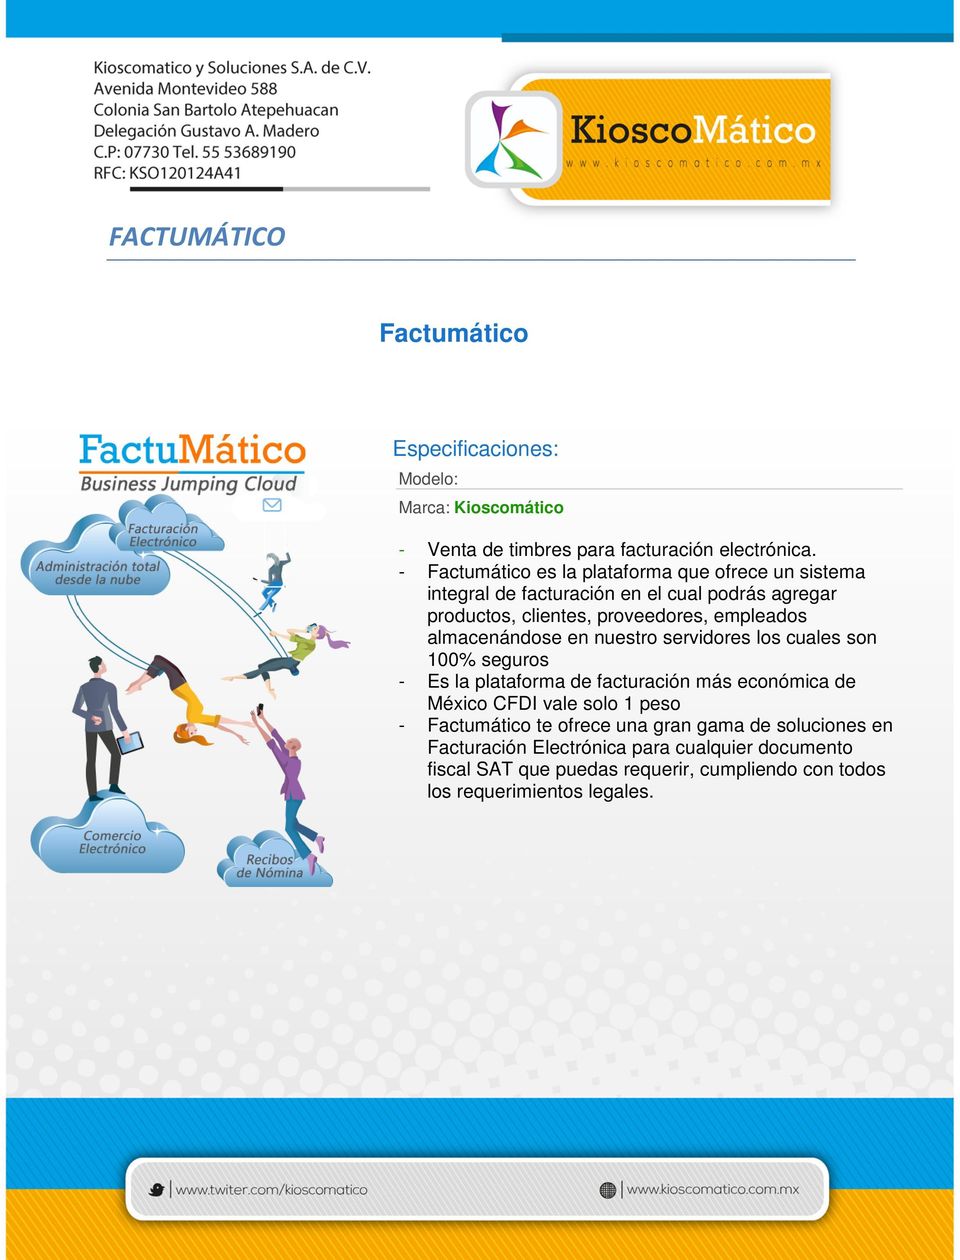 empleados almacenándose en nuestro servidores los cuales son 100% seguros - Es la plataforma de facturación más económica de México CFDI